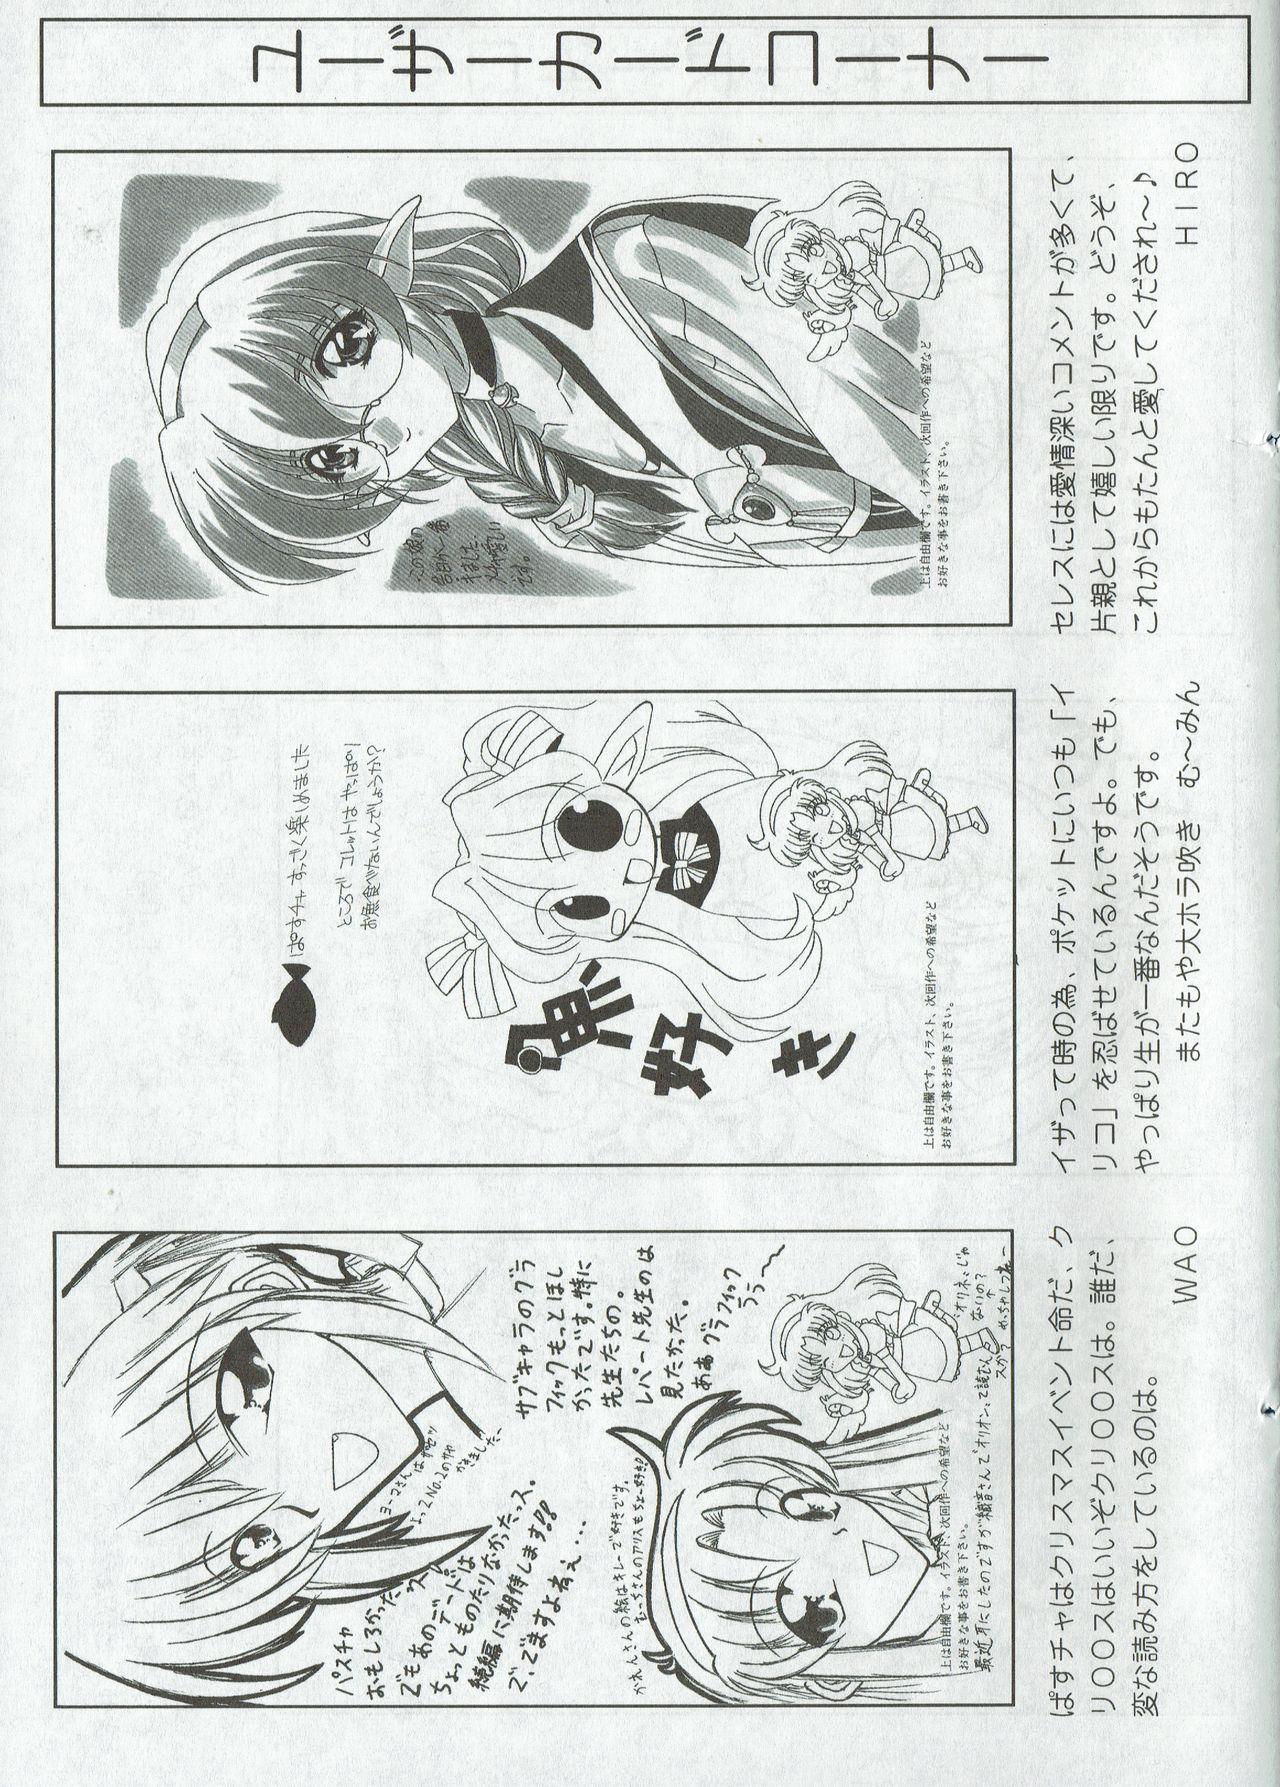 Arisu no Denchi Bakudan Vol. 06 25